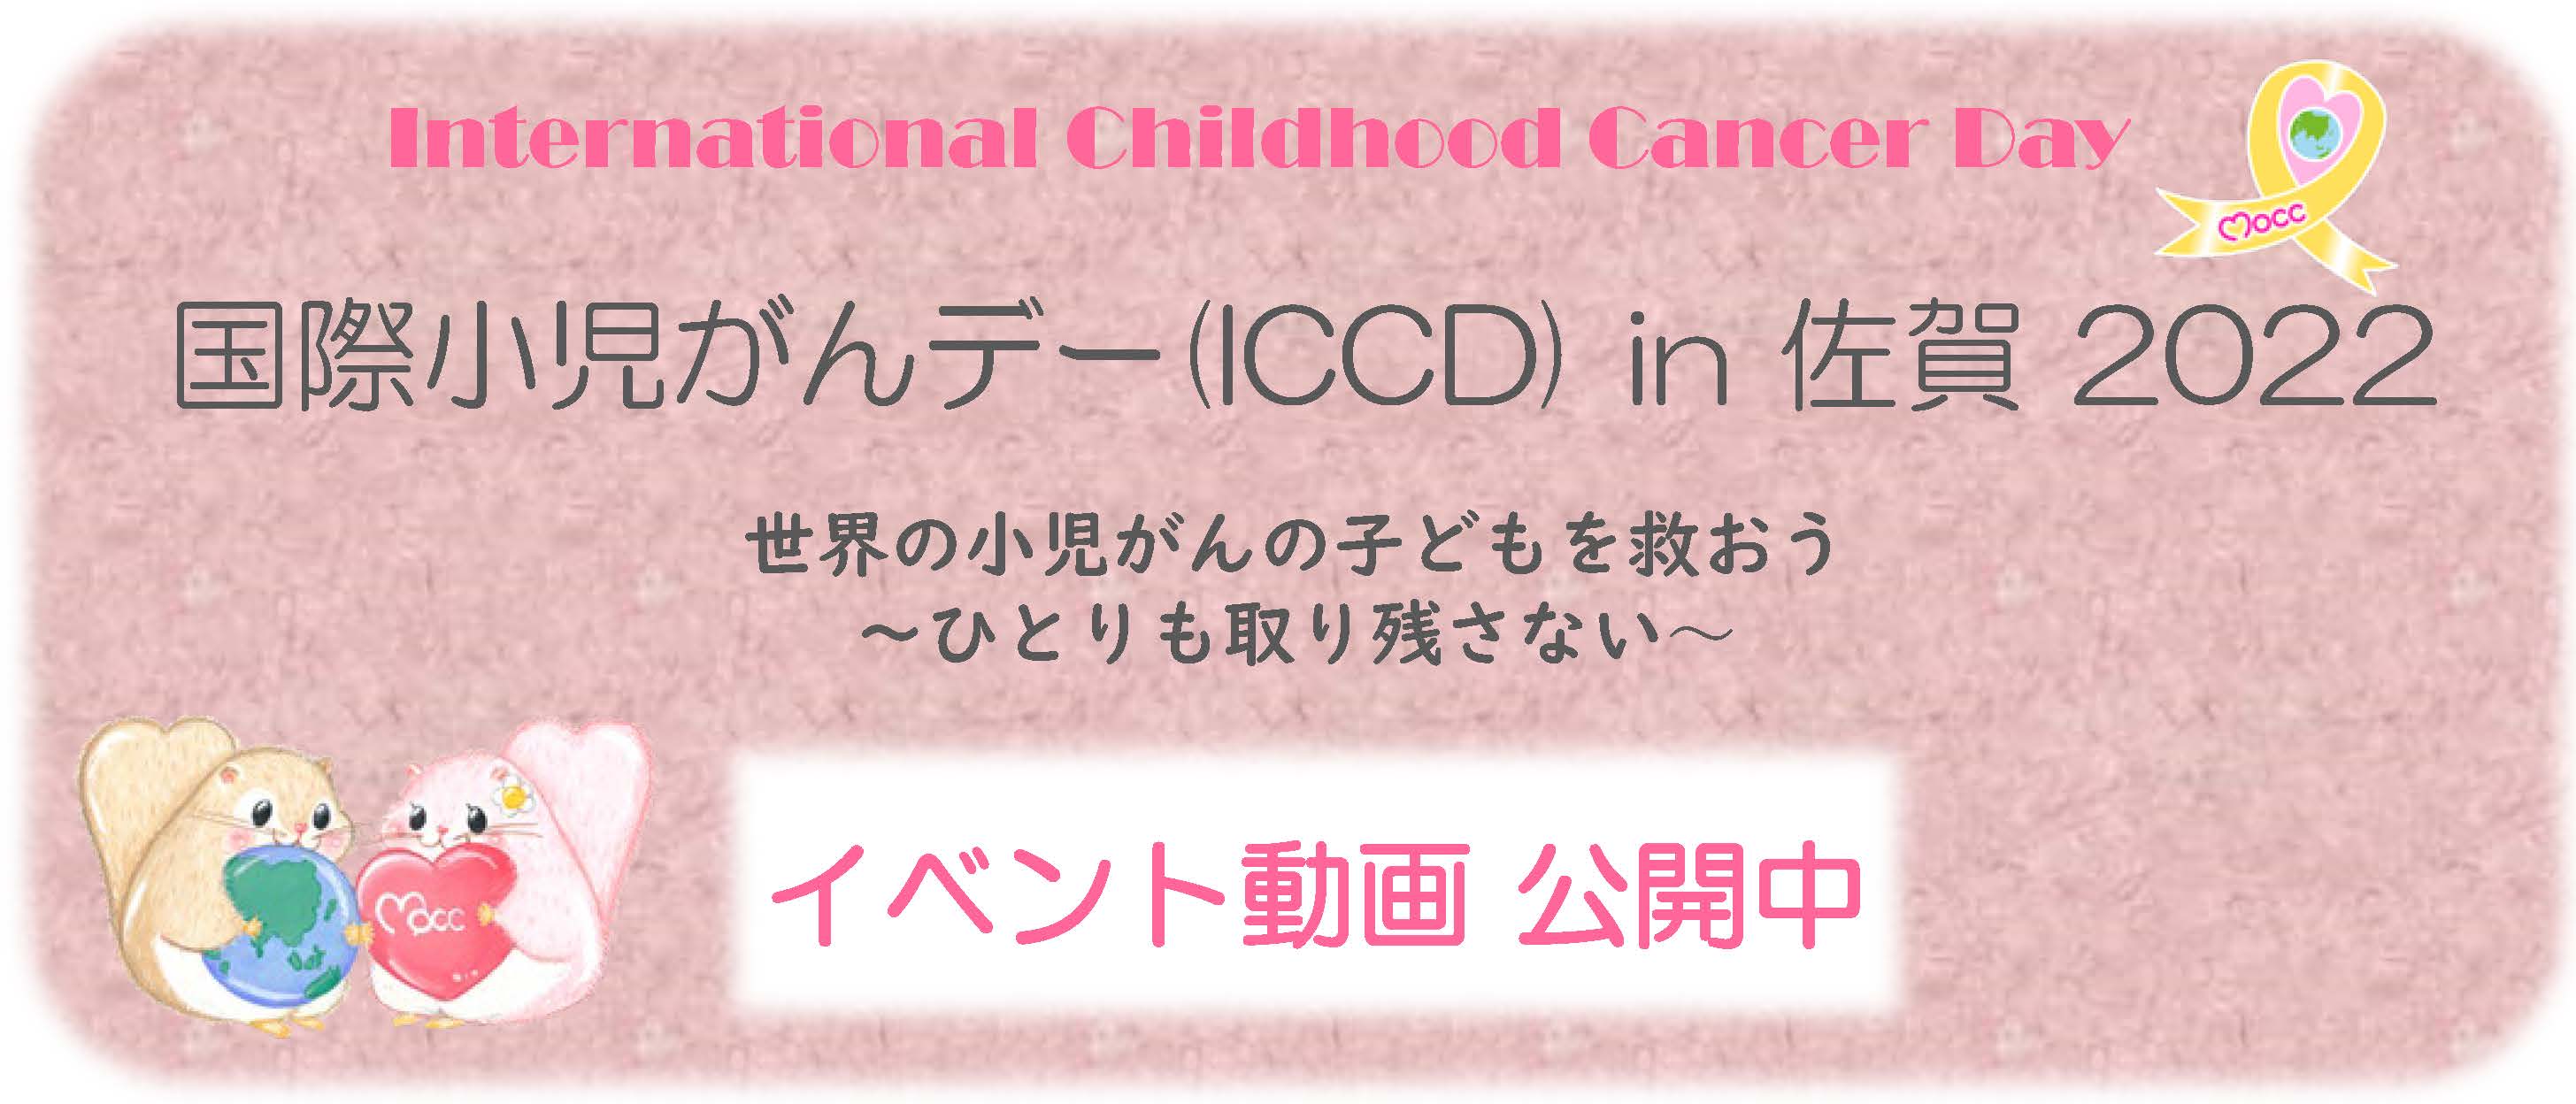 国際小児がんデーイベント(ICCD) in 佐賀 2022